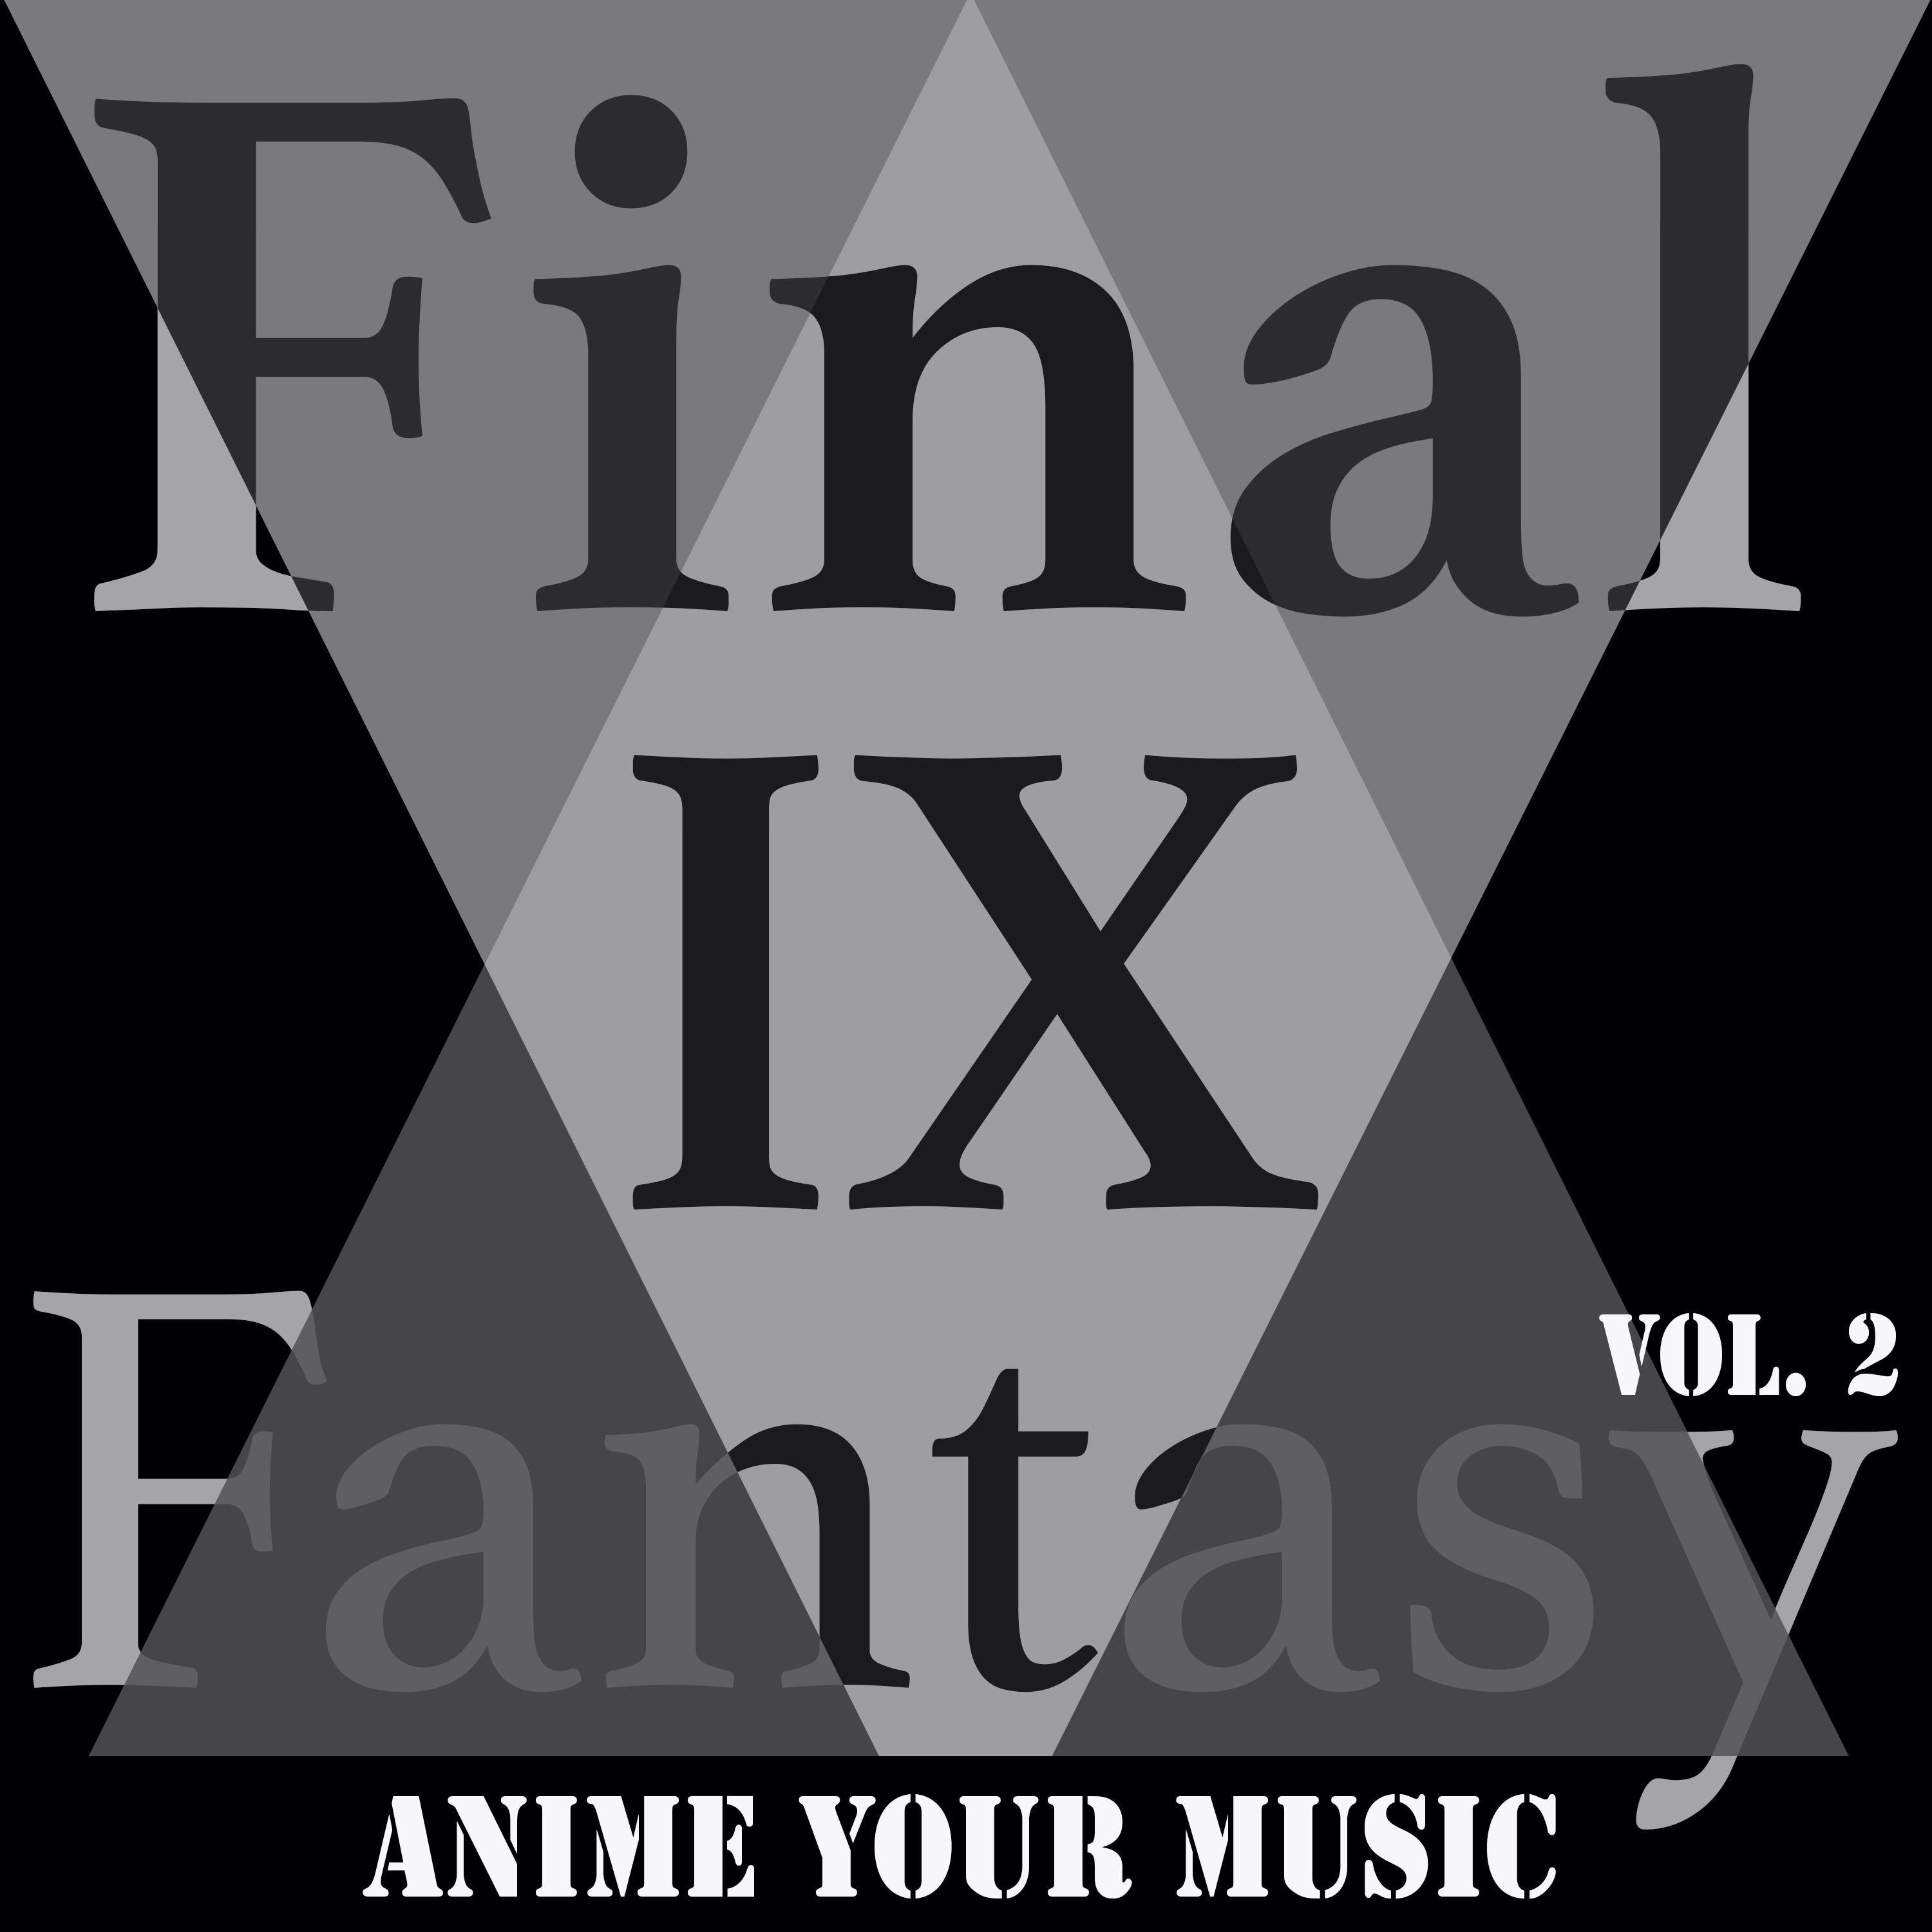 Final Fantasy IX, Vol. 2